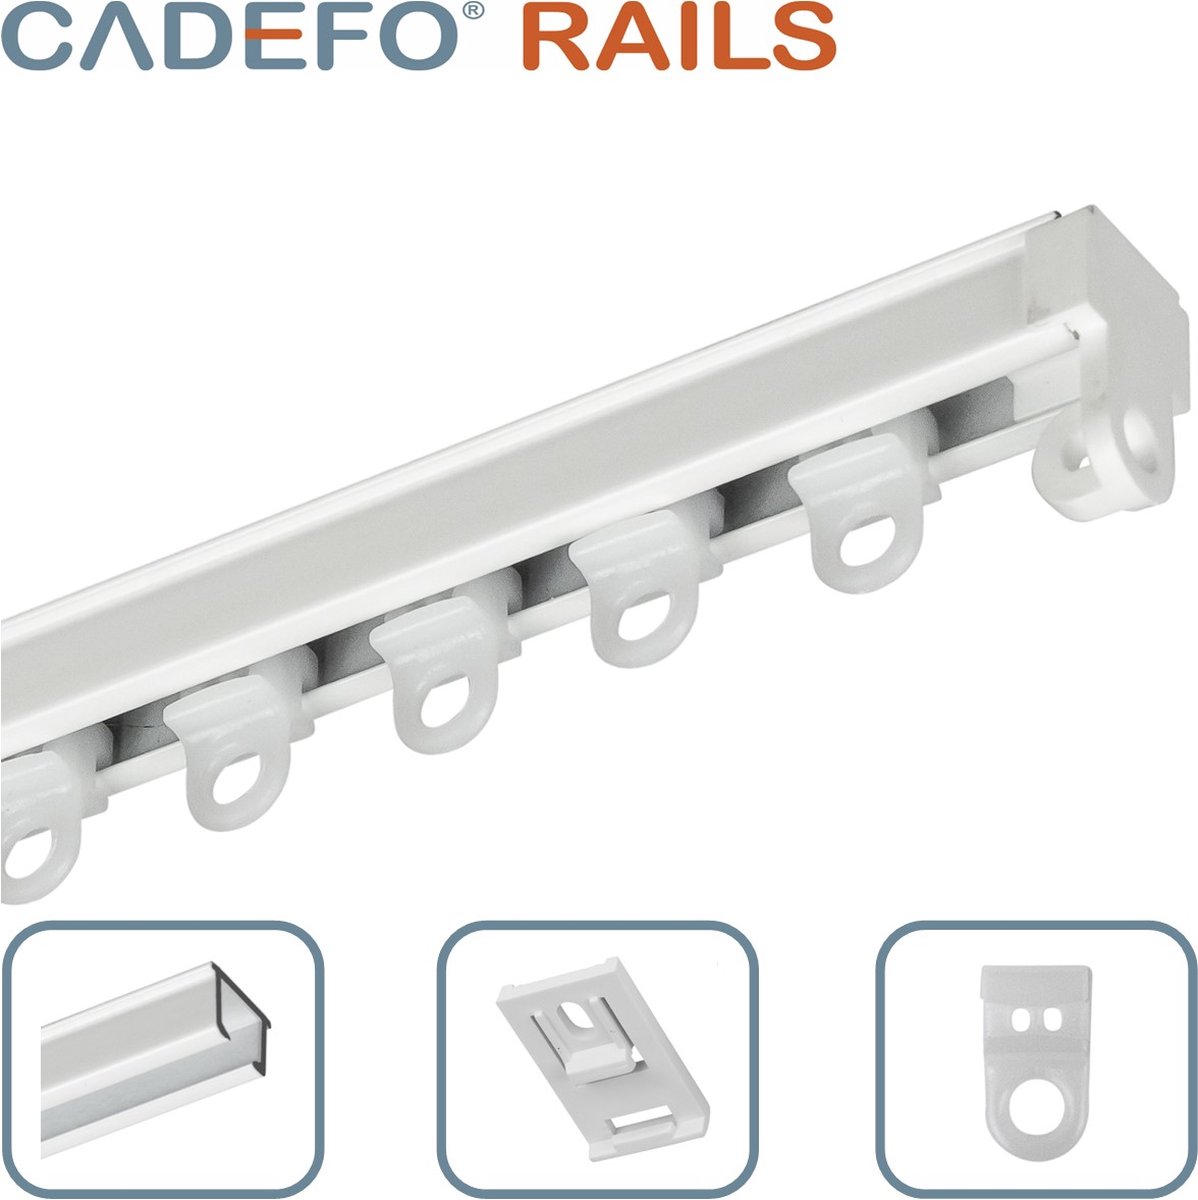 CADEFO RAILS (151 - 200 cm) Gordijnrails - Compleet op maat! - UIT 1 STUK - Leverbaar tot 6 meter - Plafondbevestiging - Lengte 159 cm